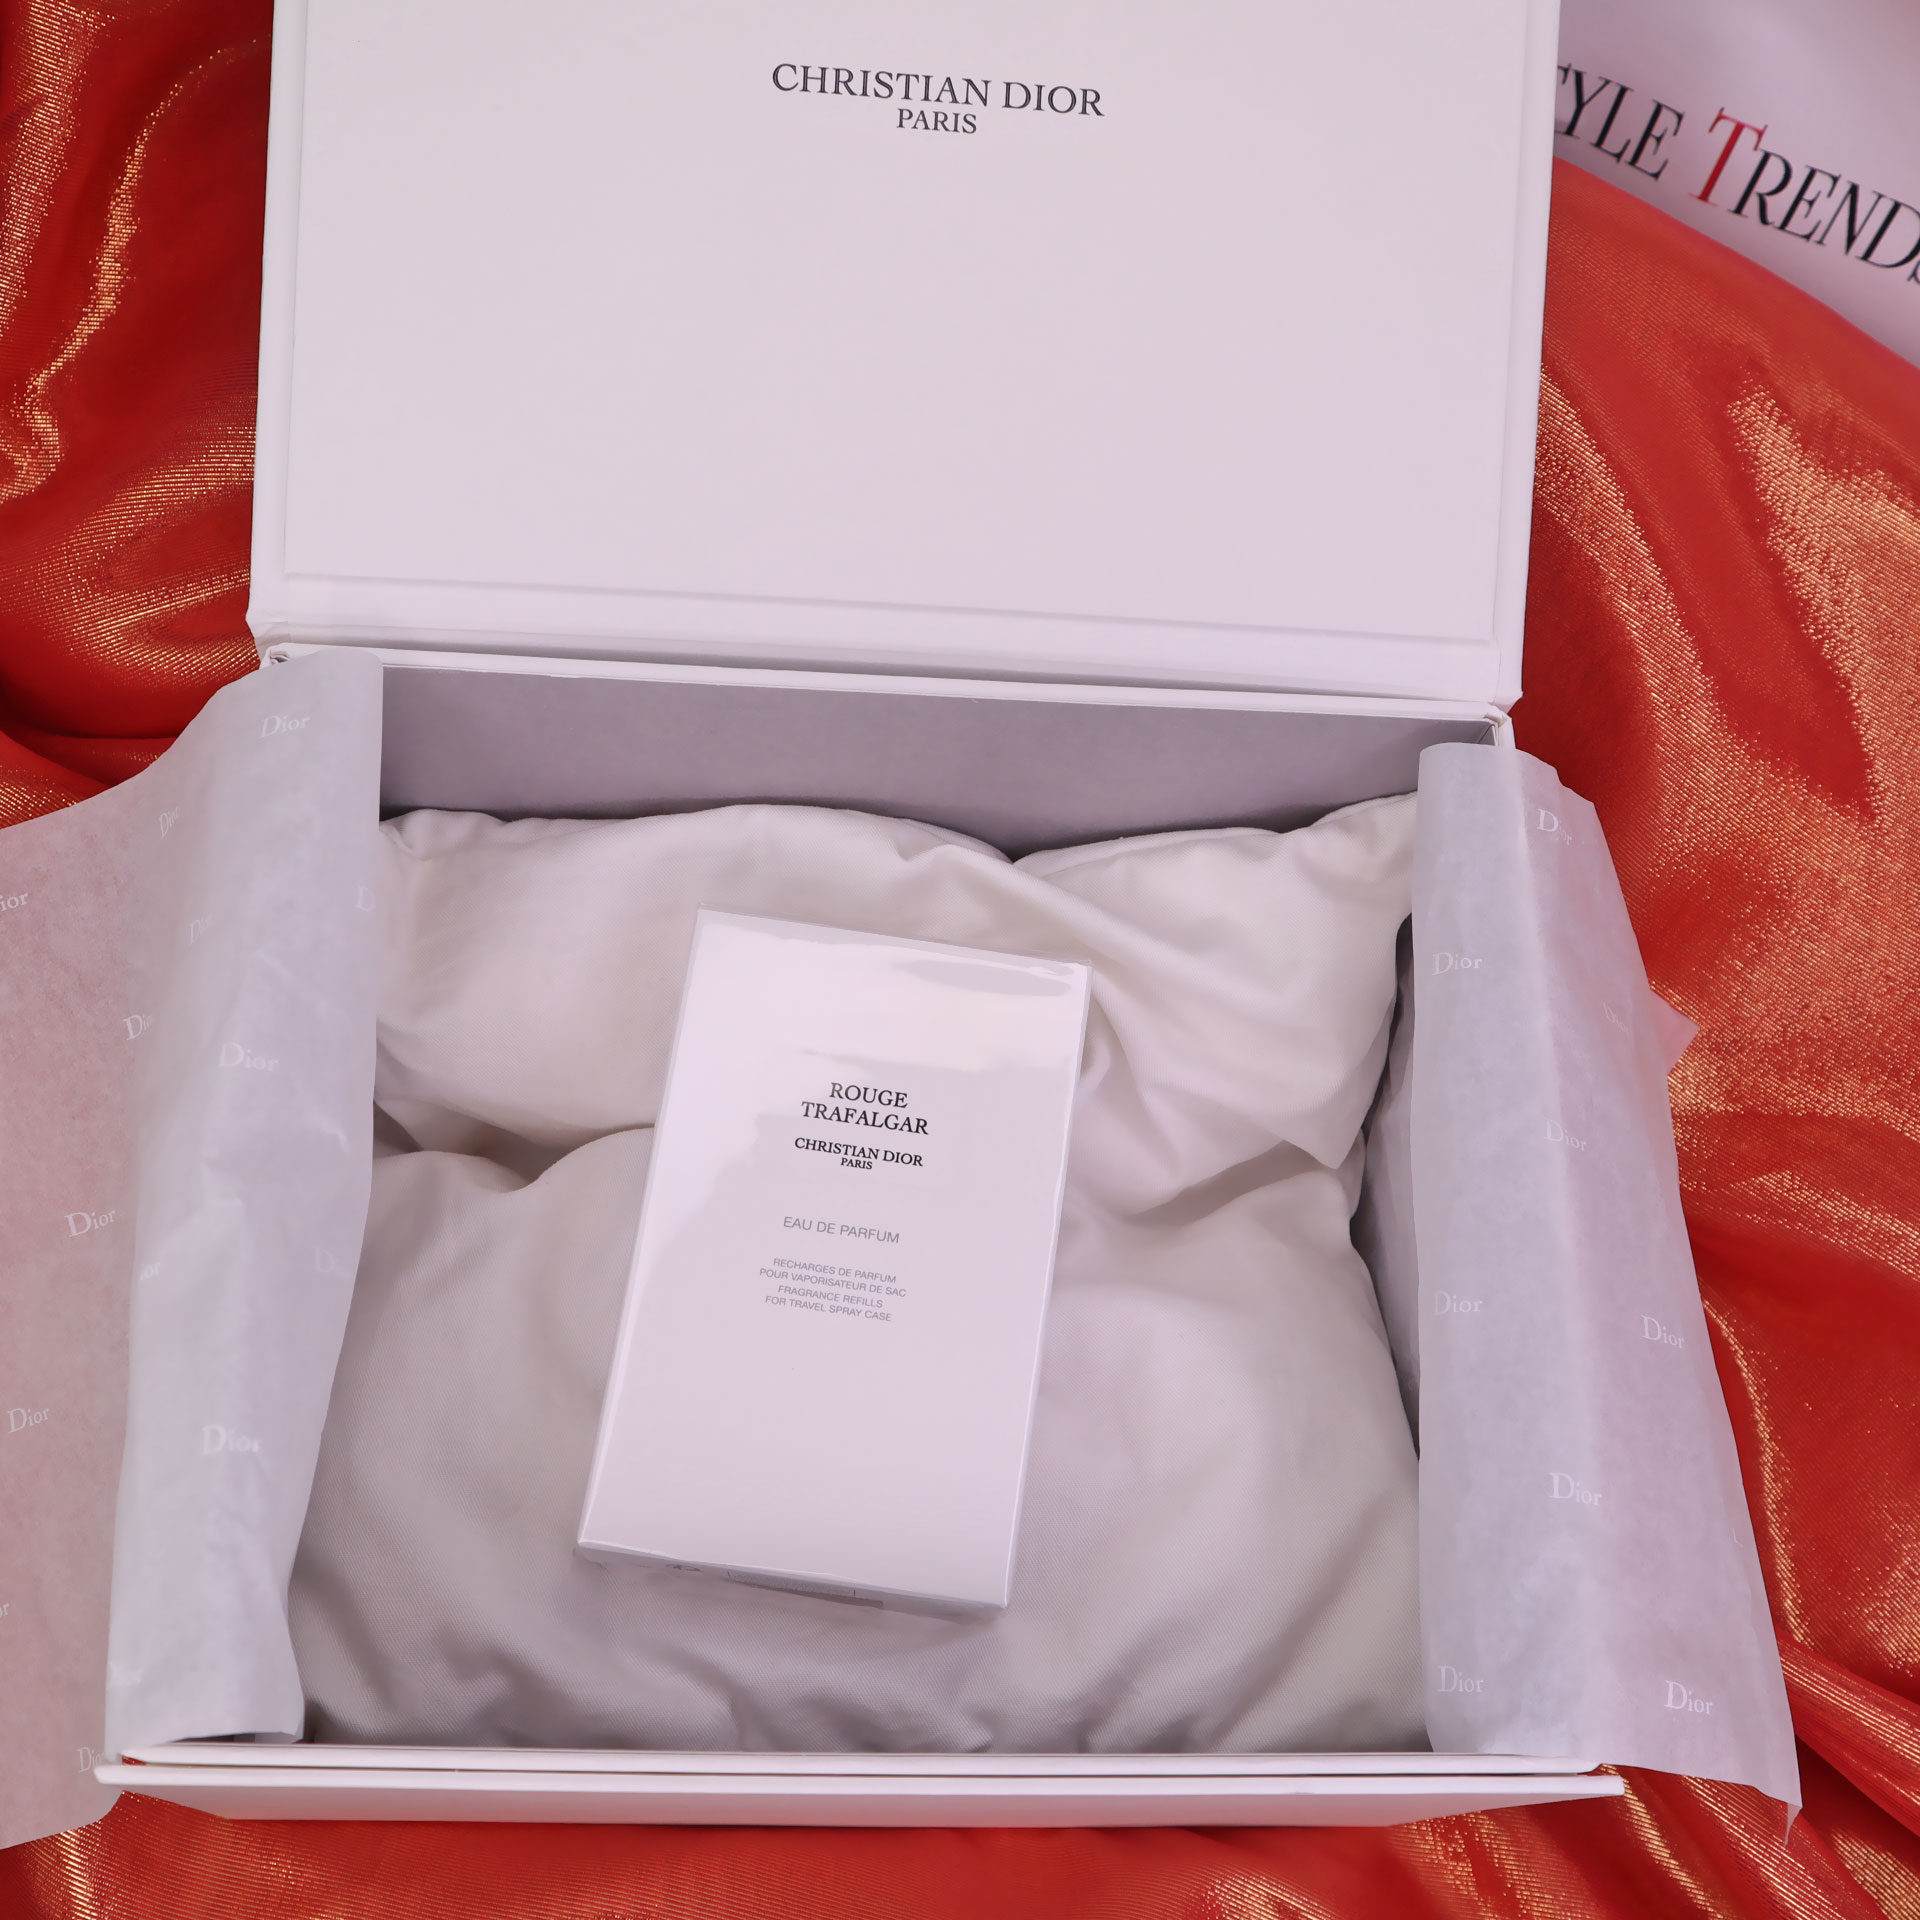 Rouge Trafalgar Eau de Parfum Maison Christian Dior La Collection Privée, Photo Of Joy Style Trends Media